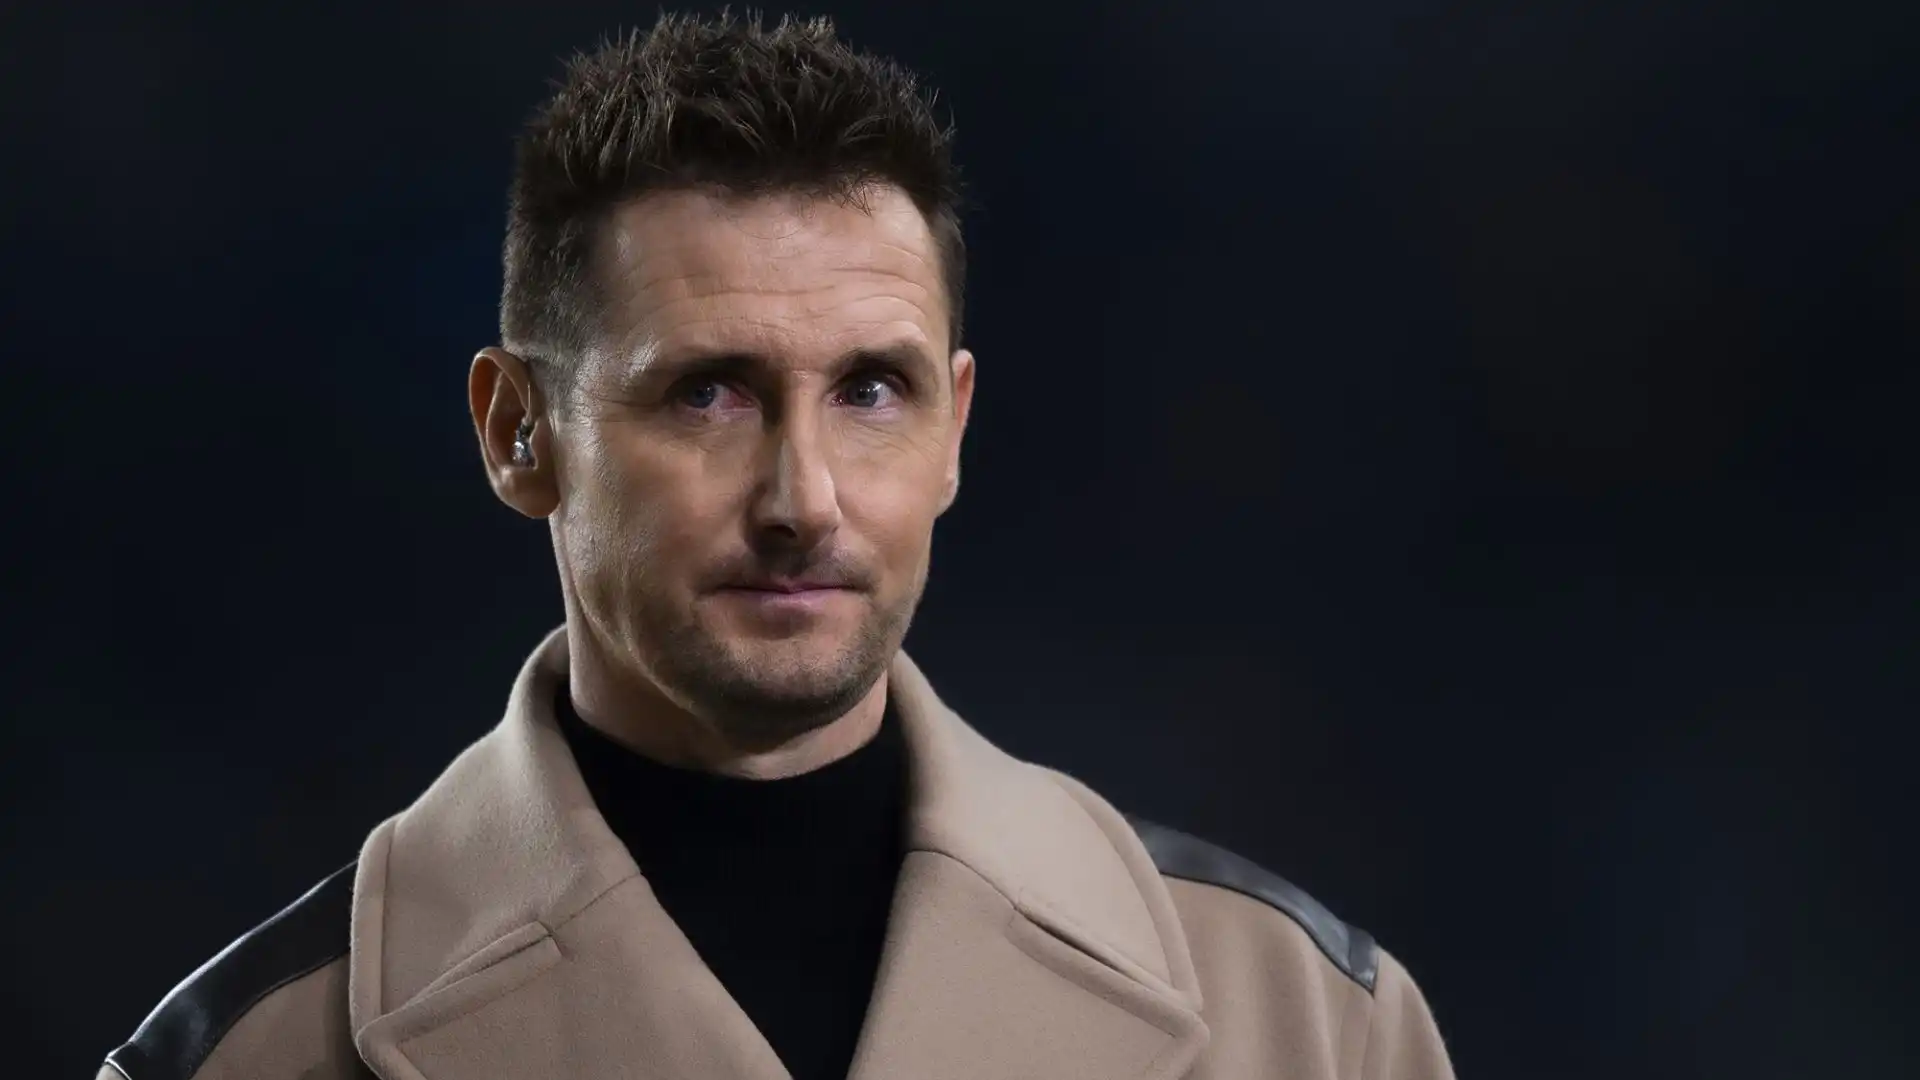 Sulla panchina del Bayern arriverebbe l'ex attaccante Miroslav Klose, assistito da Hermann Gerland